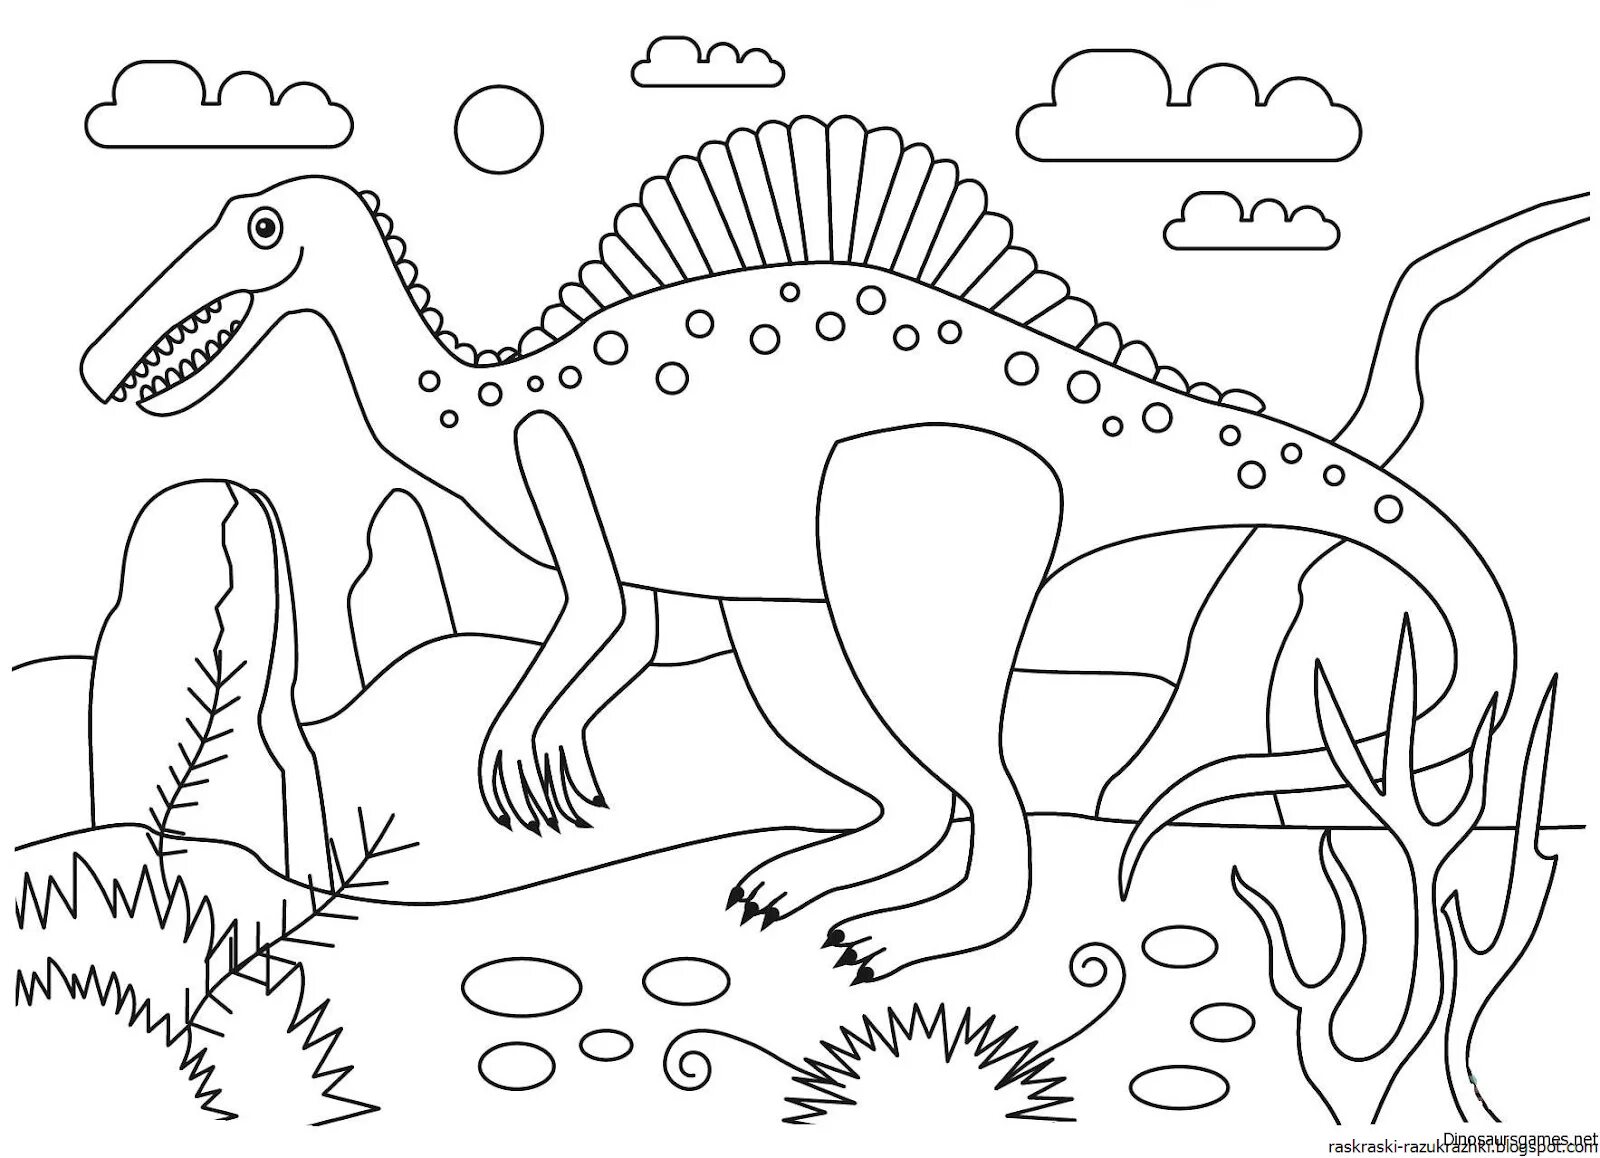 Детская раскраска Динозавры - играй или бесплатно распечатай